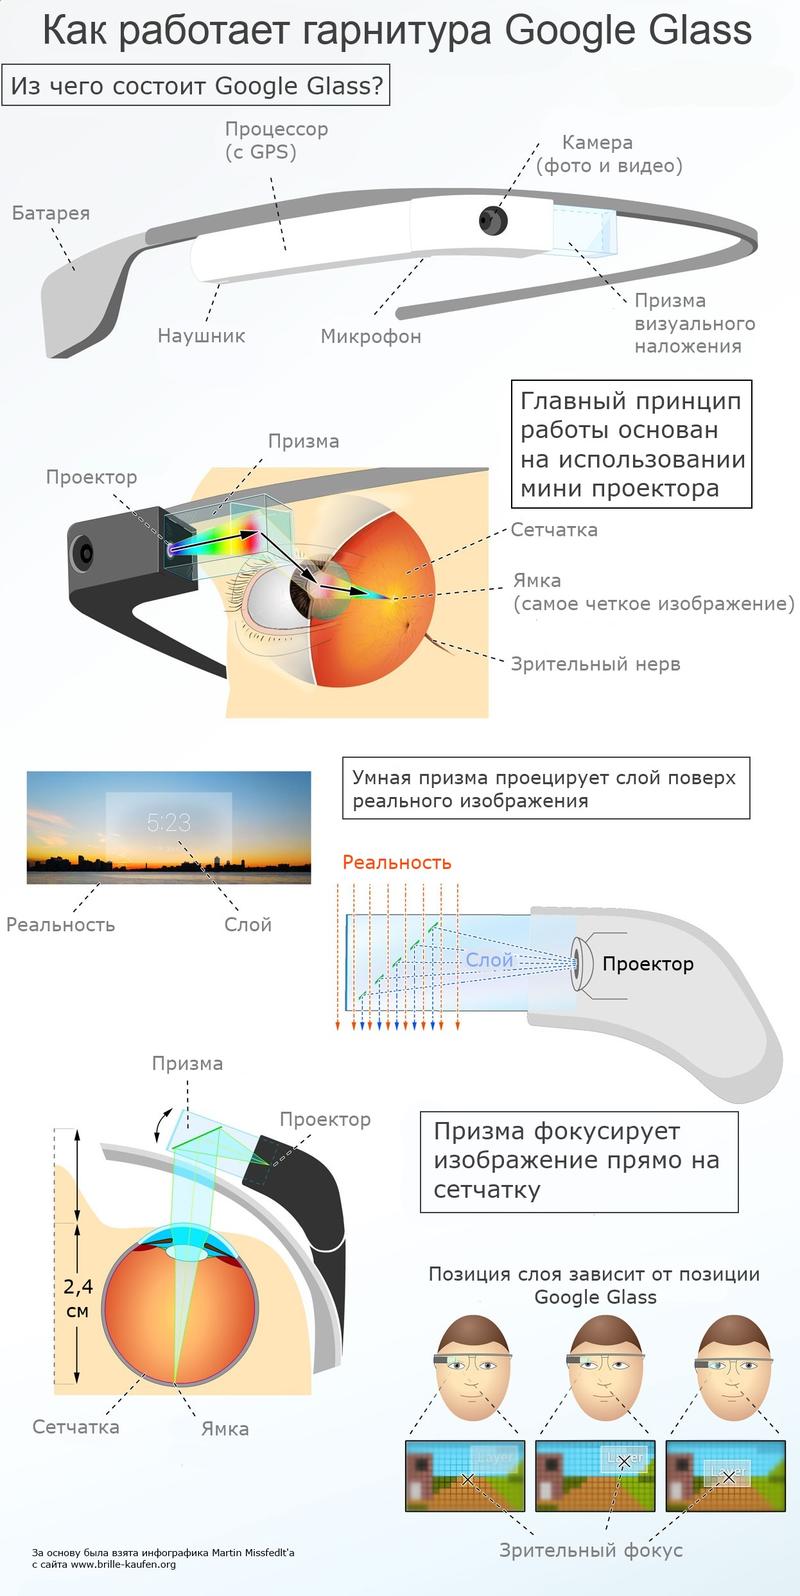 В Украине начались продажи поддельных «умных очков» Google Glass